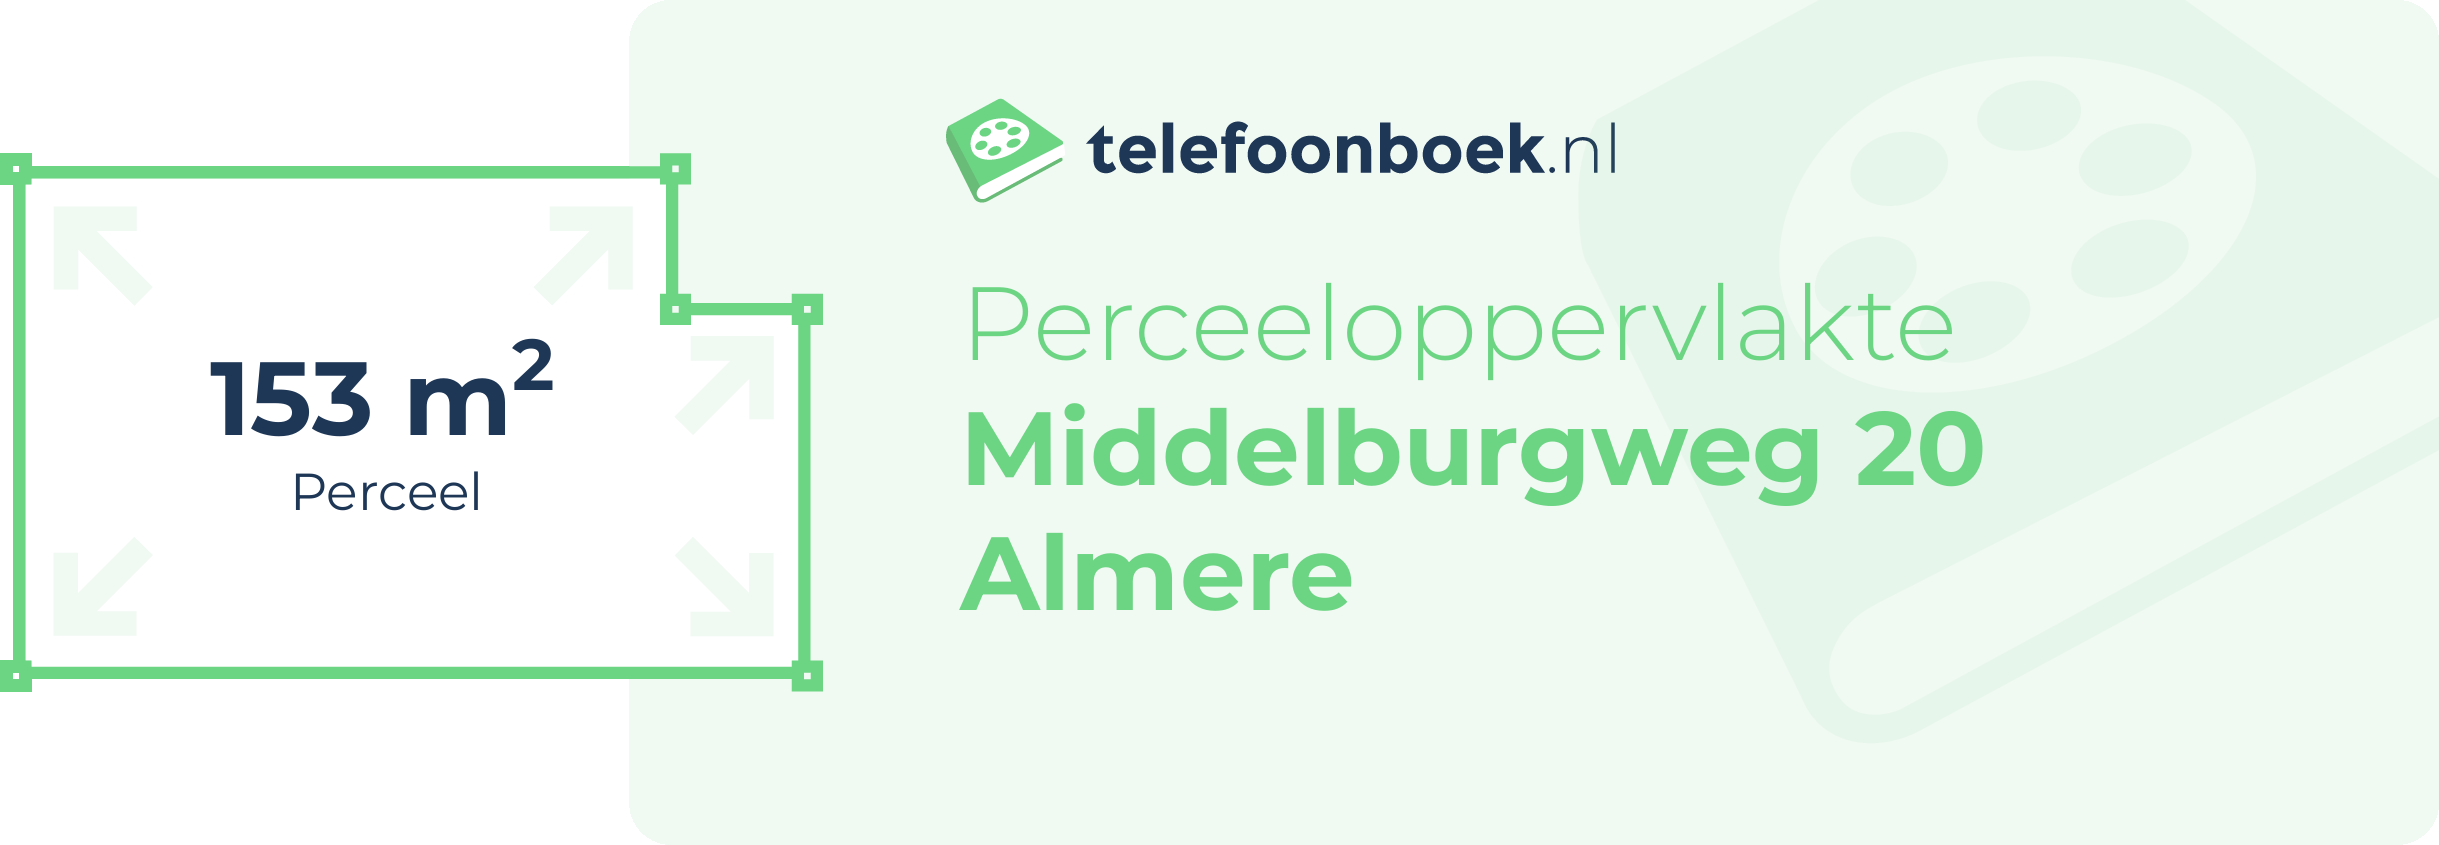 Perceeloppervlakte Middelburgweg 20 Almere